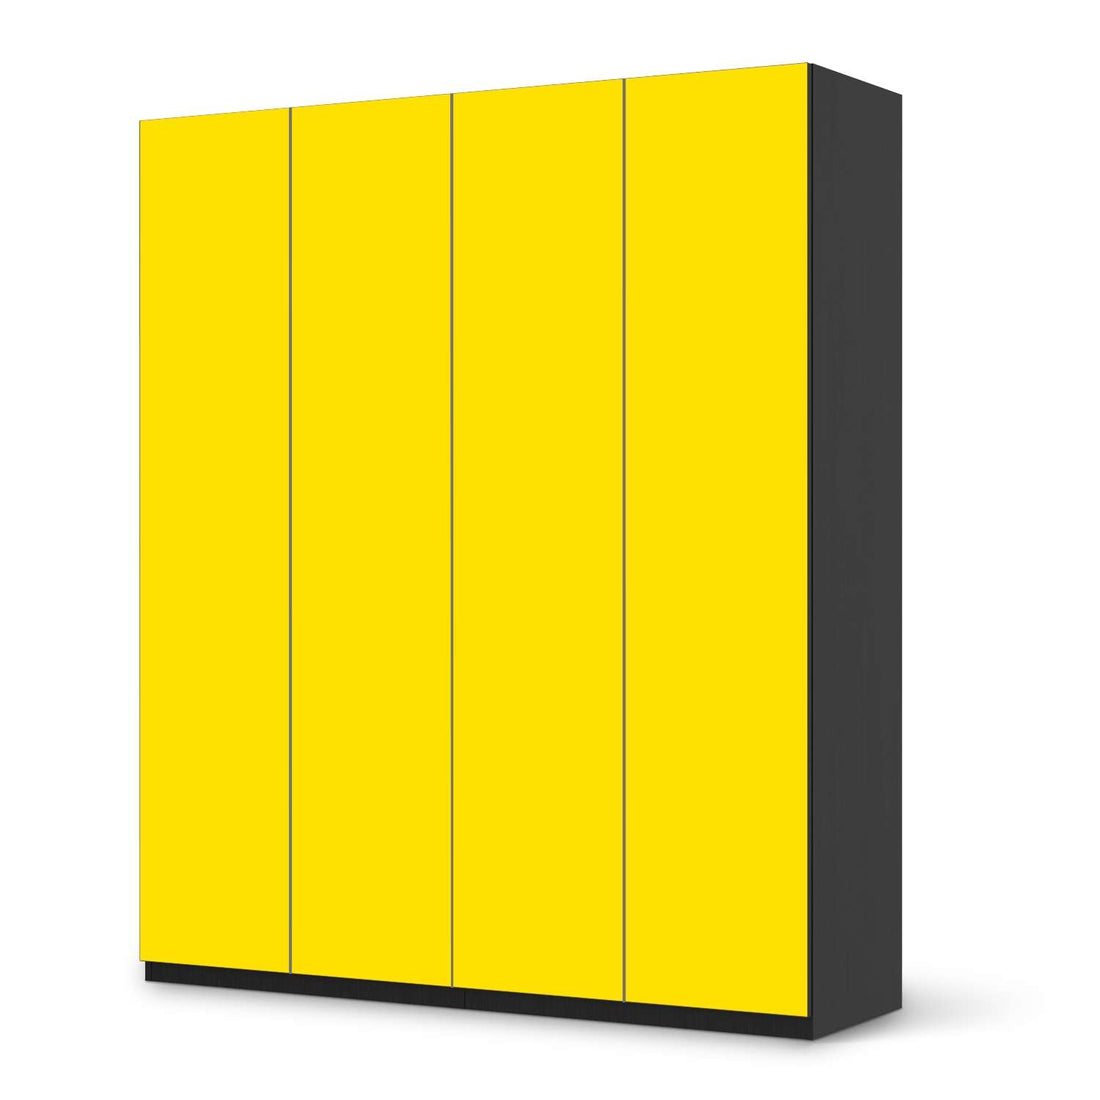 Möbelfolie Gelb Dark - IKEA Pax Schrank 236 cm Höhe - 4 Türen - schwarz